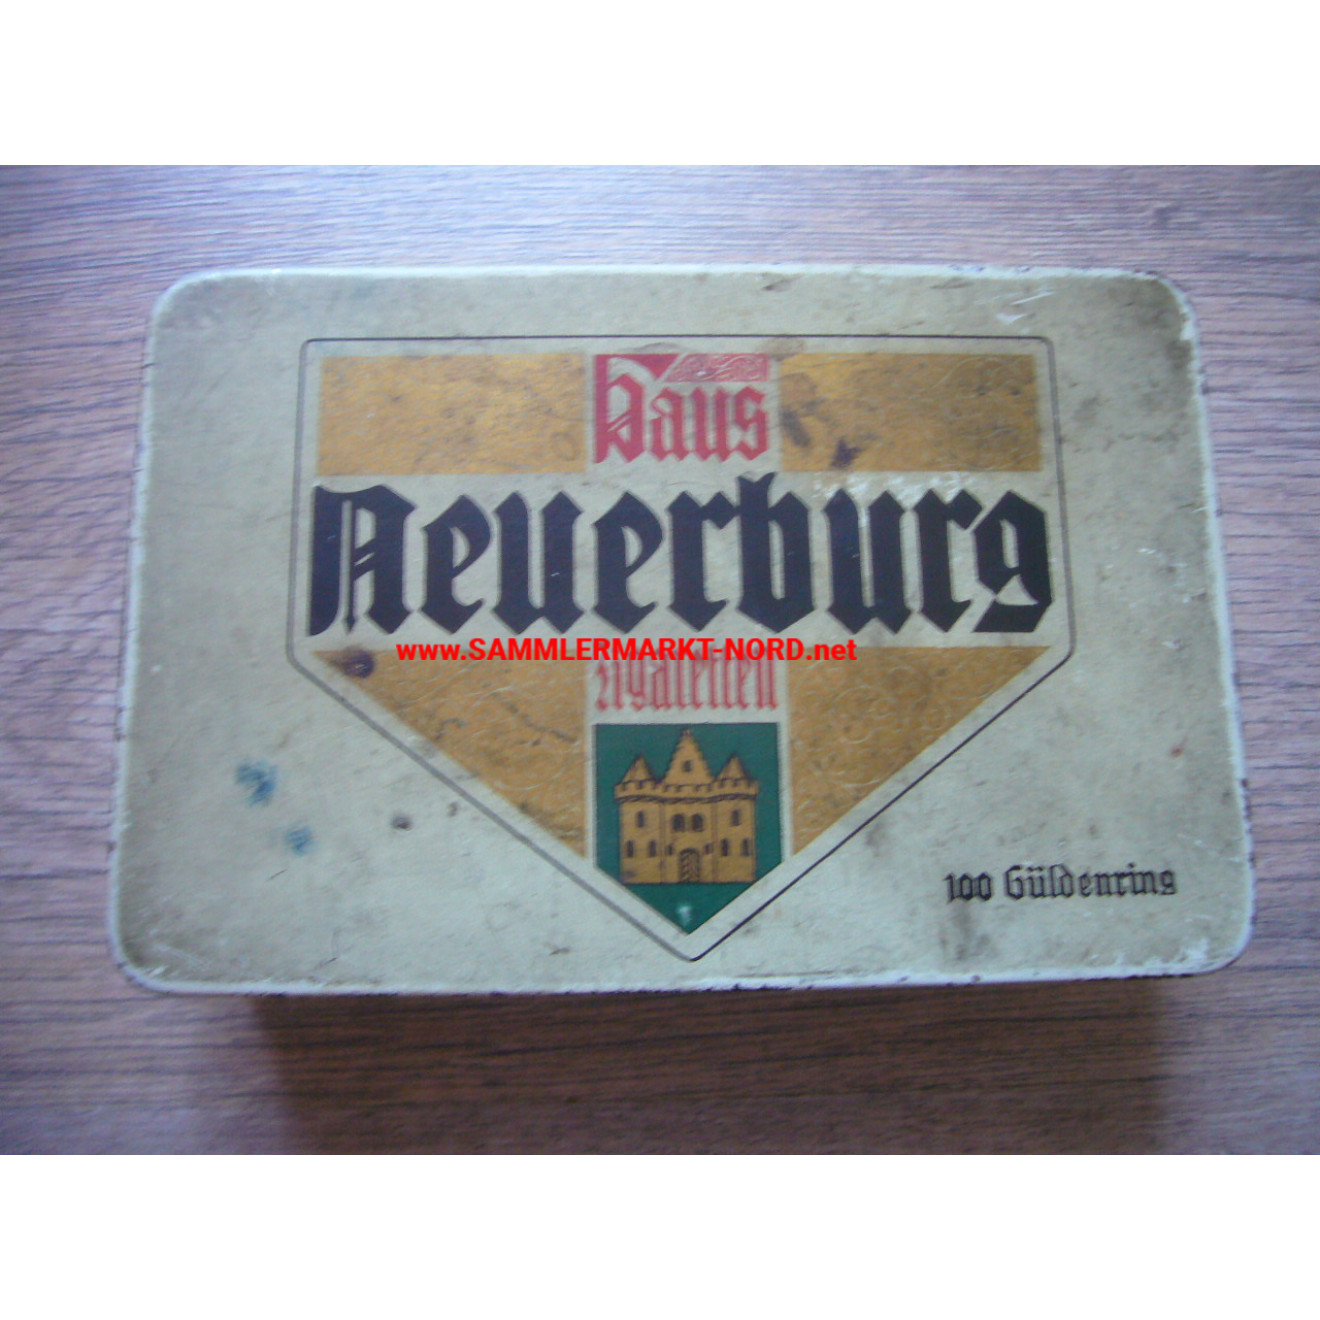 Wehrmacht - Sutler - House Neuerburg - Cigarette box